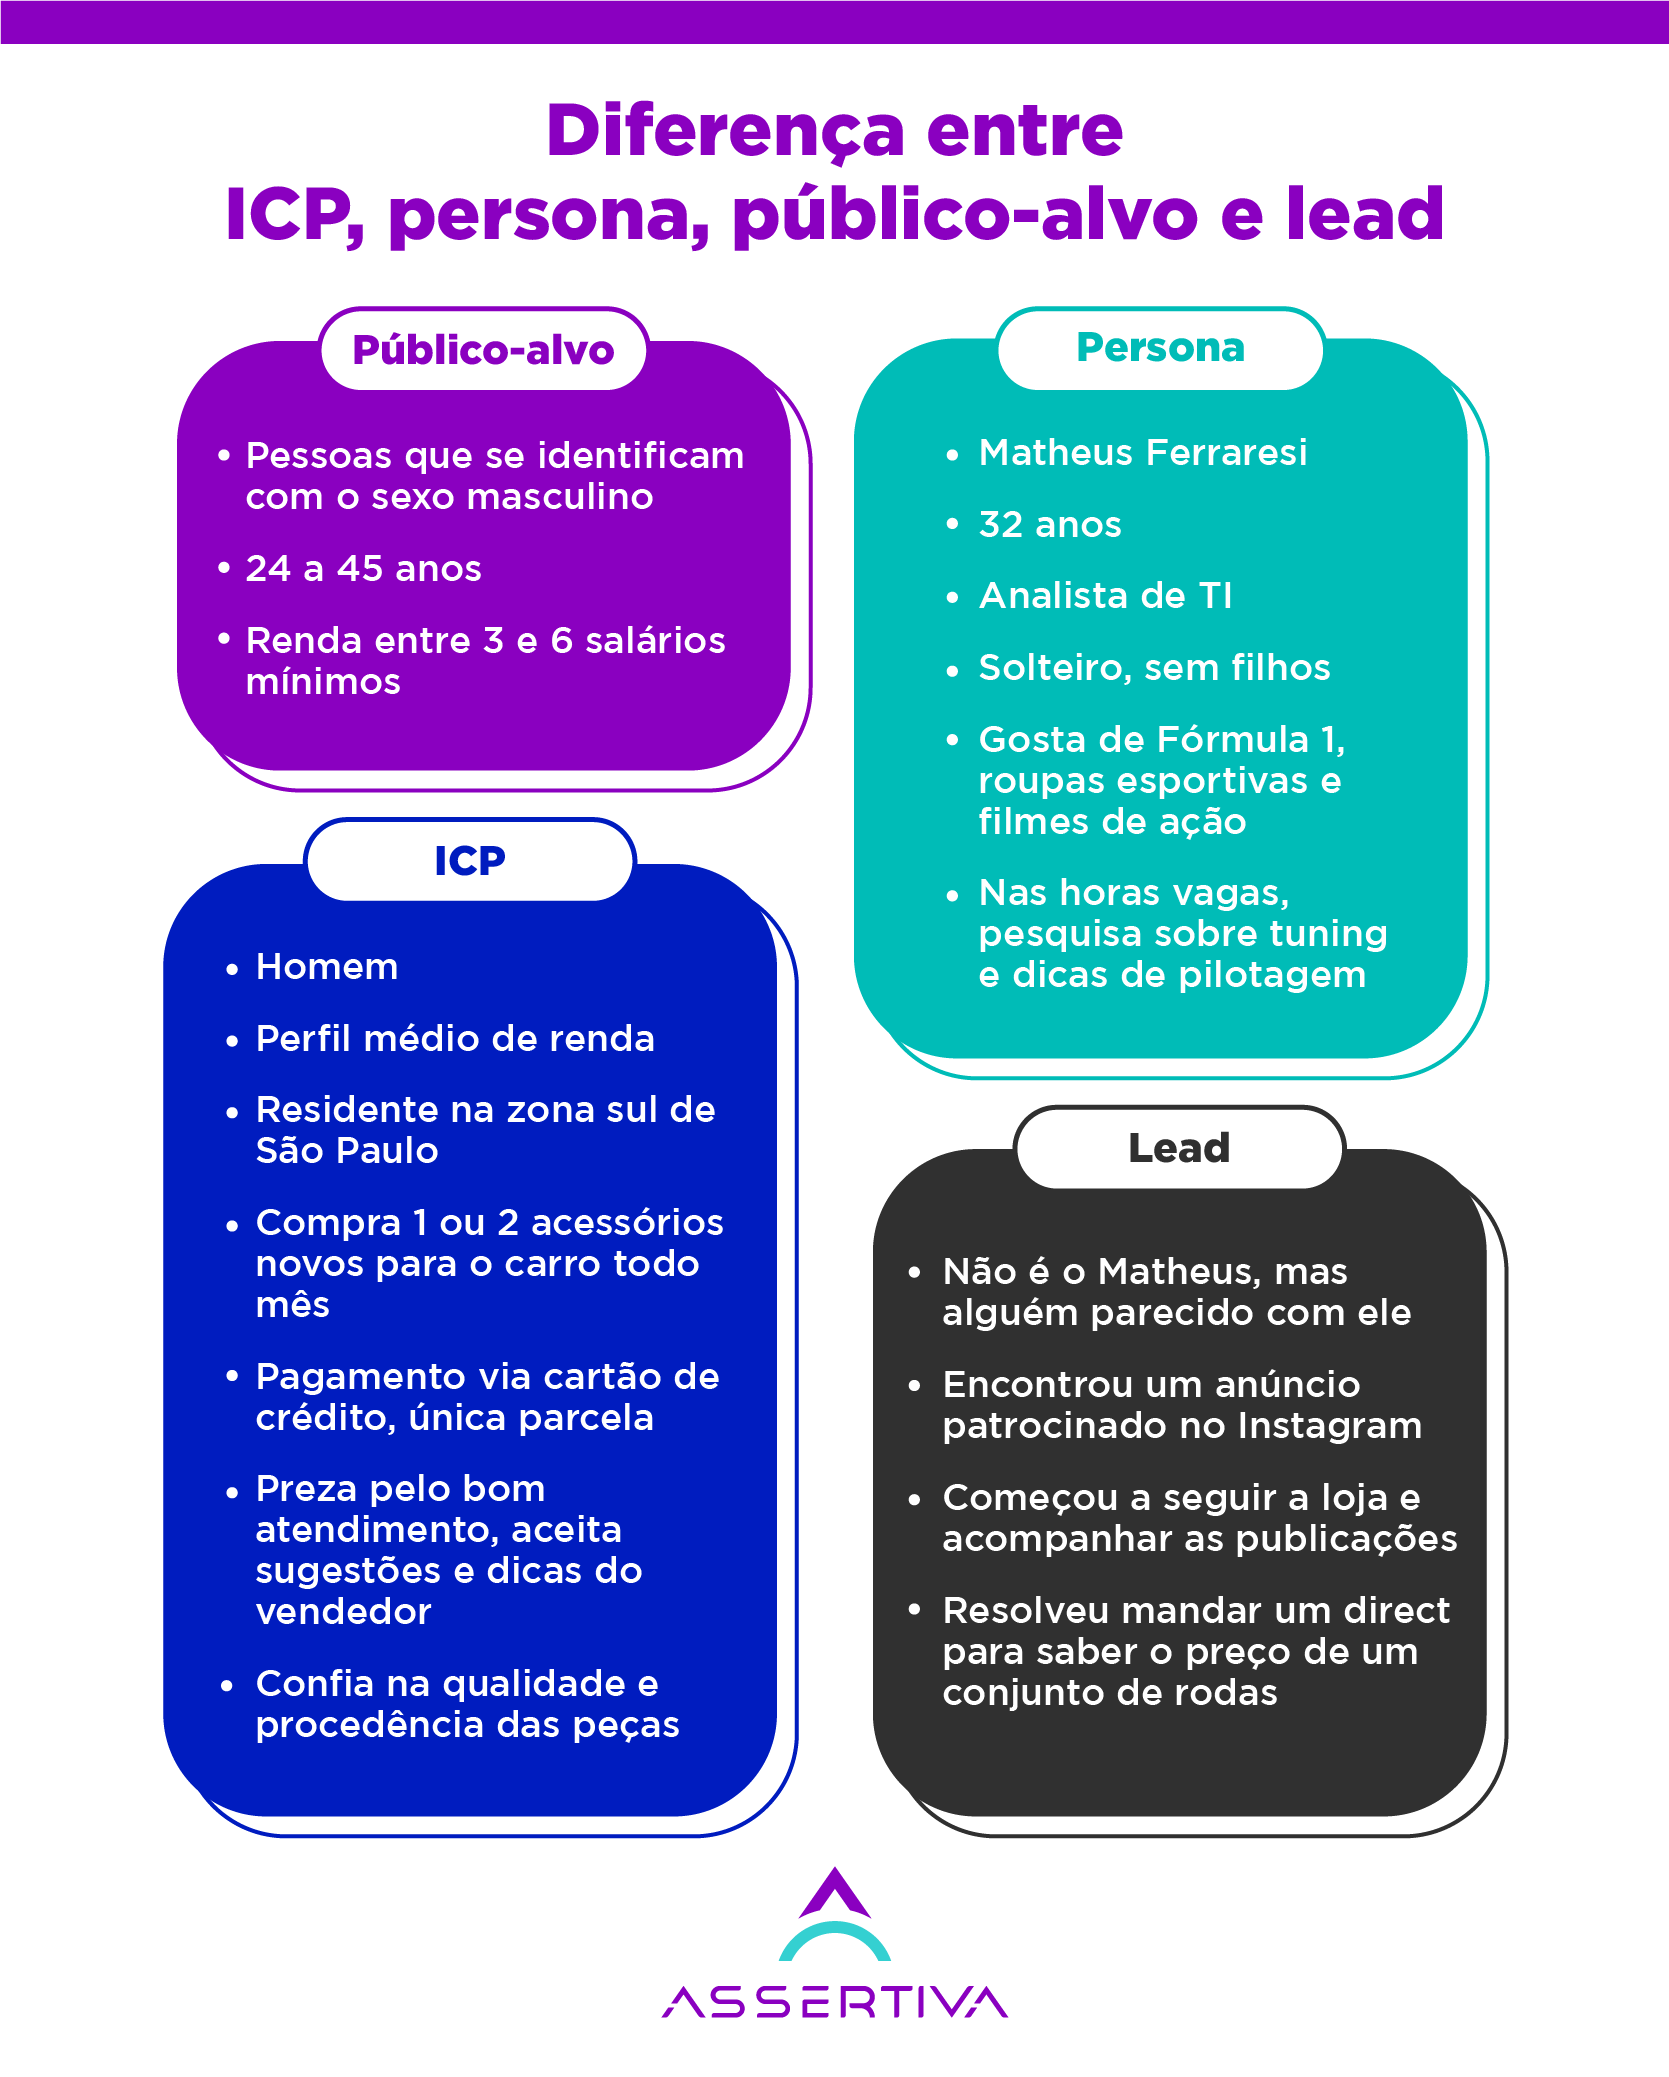 Infográfico explicando as diferenças entre ICP, persona, público-alvo e lead